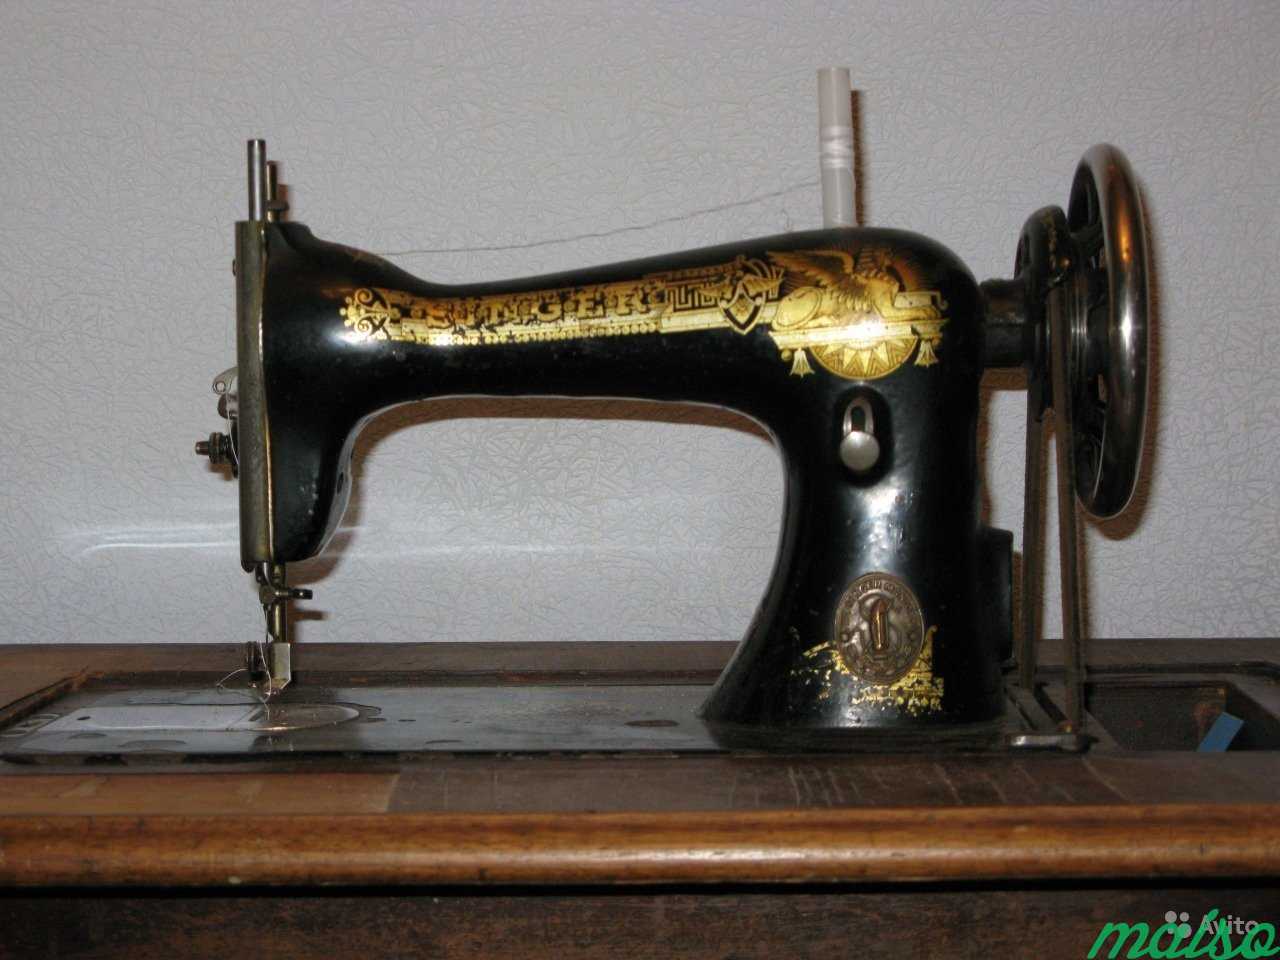 Швейная машинка зингер купить на авито. Швейная машинка (Zinger super 2001). Швейная машинка Зингер 1904 года. Швейная машинка Зингер китайского производства. Очень редкие Швейные машинки Зингер.